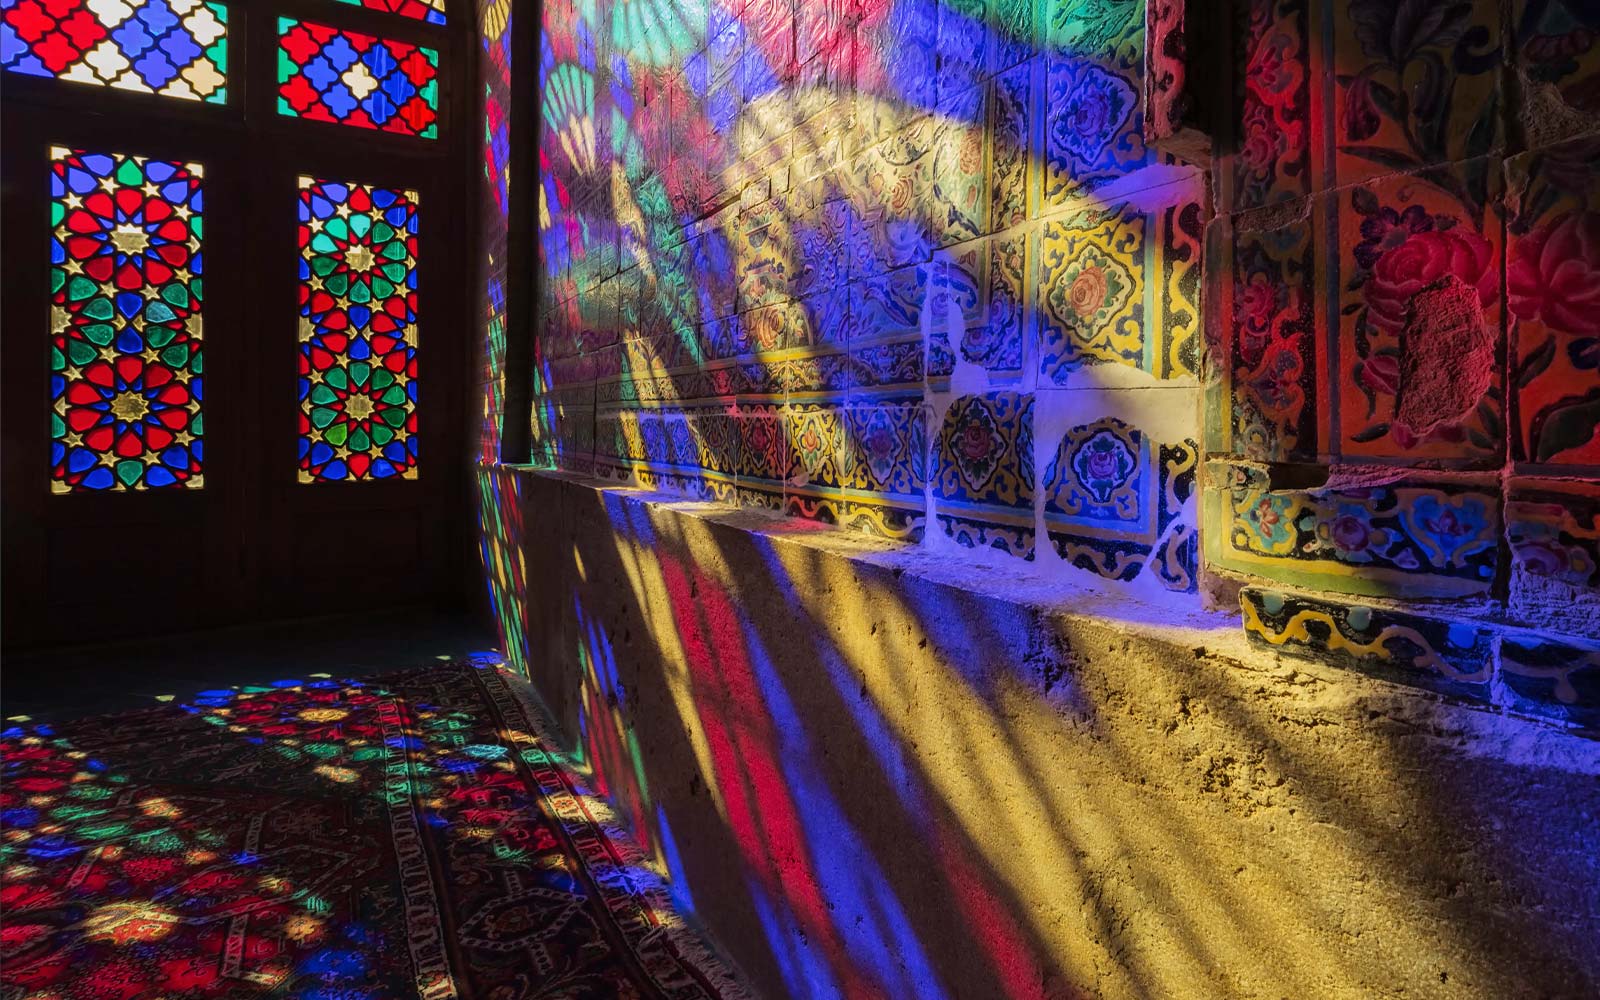 Scéna ukazující světlo prosvítající přes vitrážová okna a promítající barvy na zeď (přehrát video).